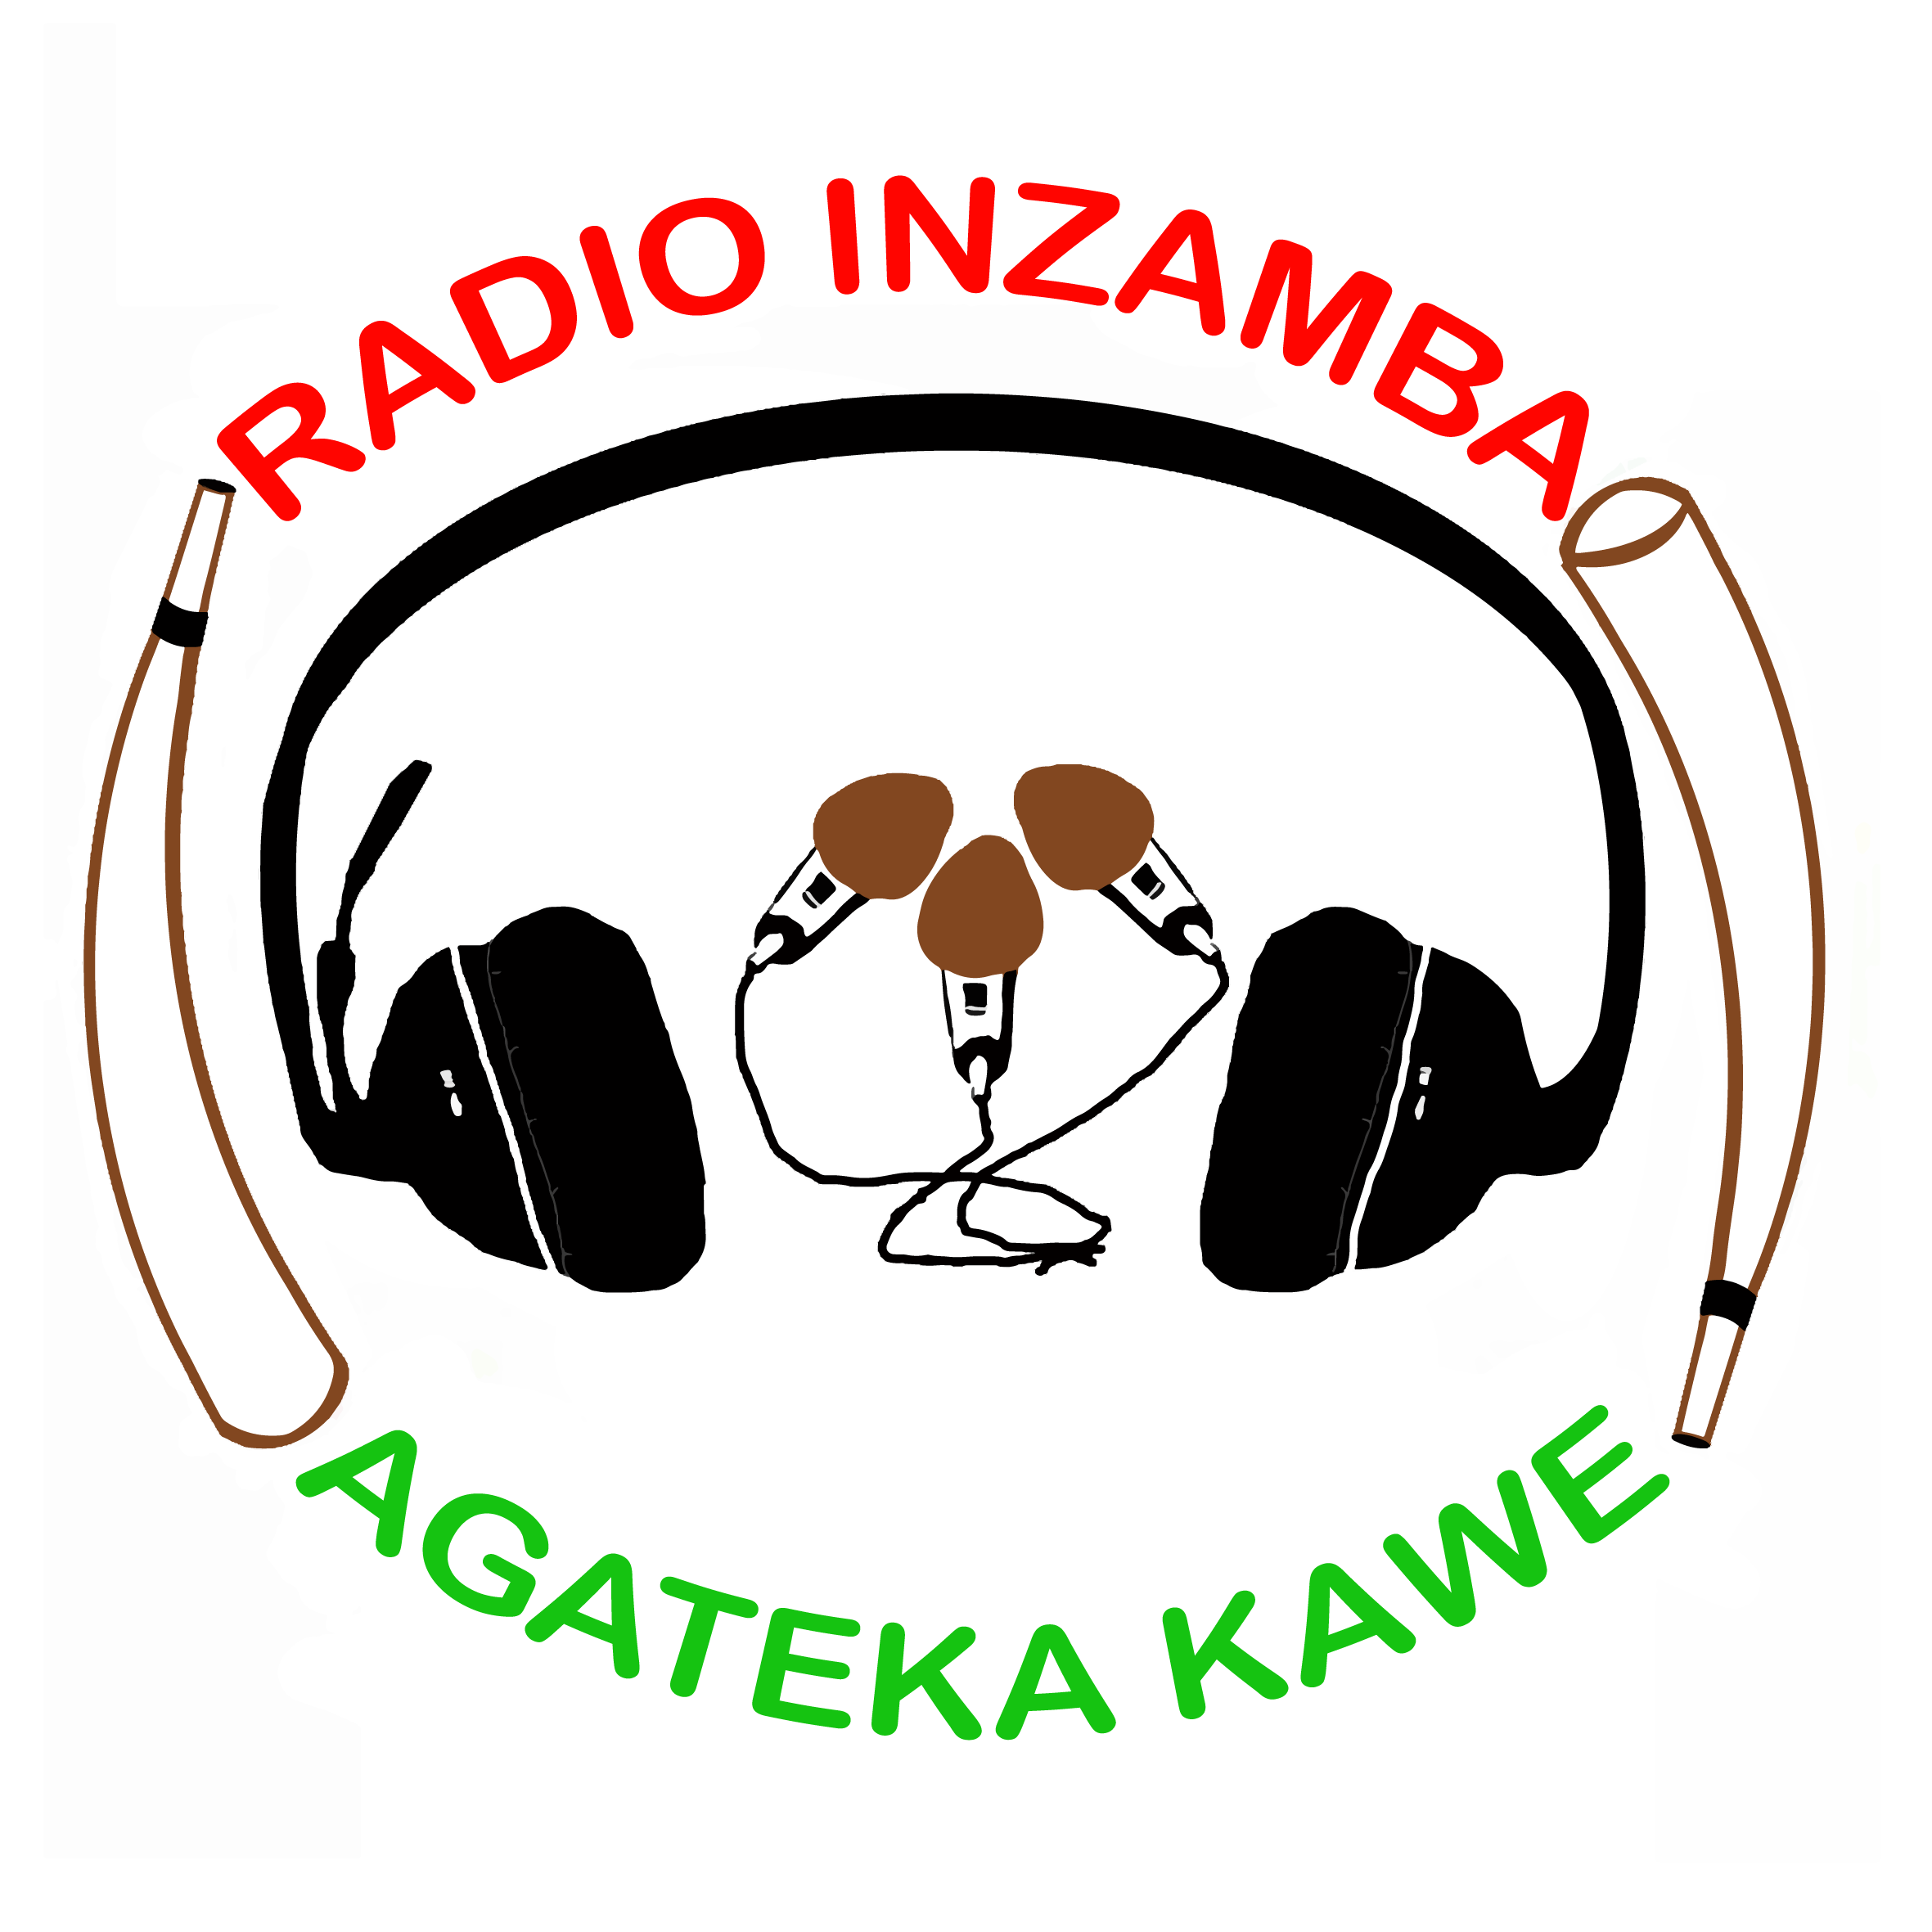 Radio Inzamba